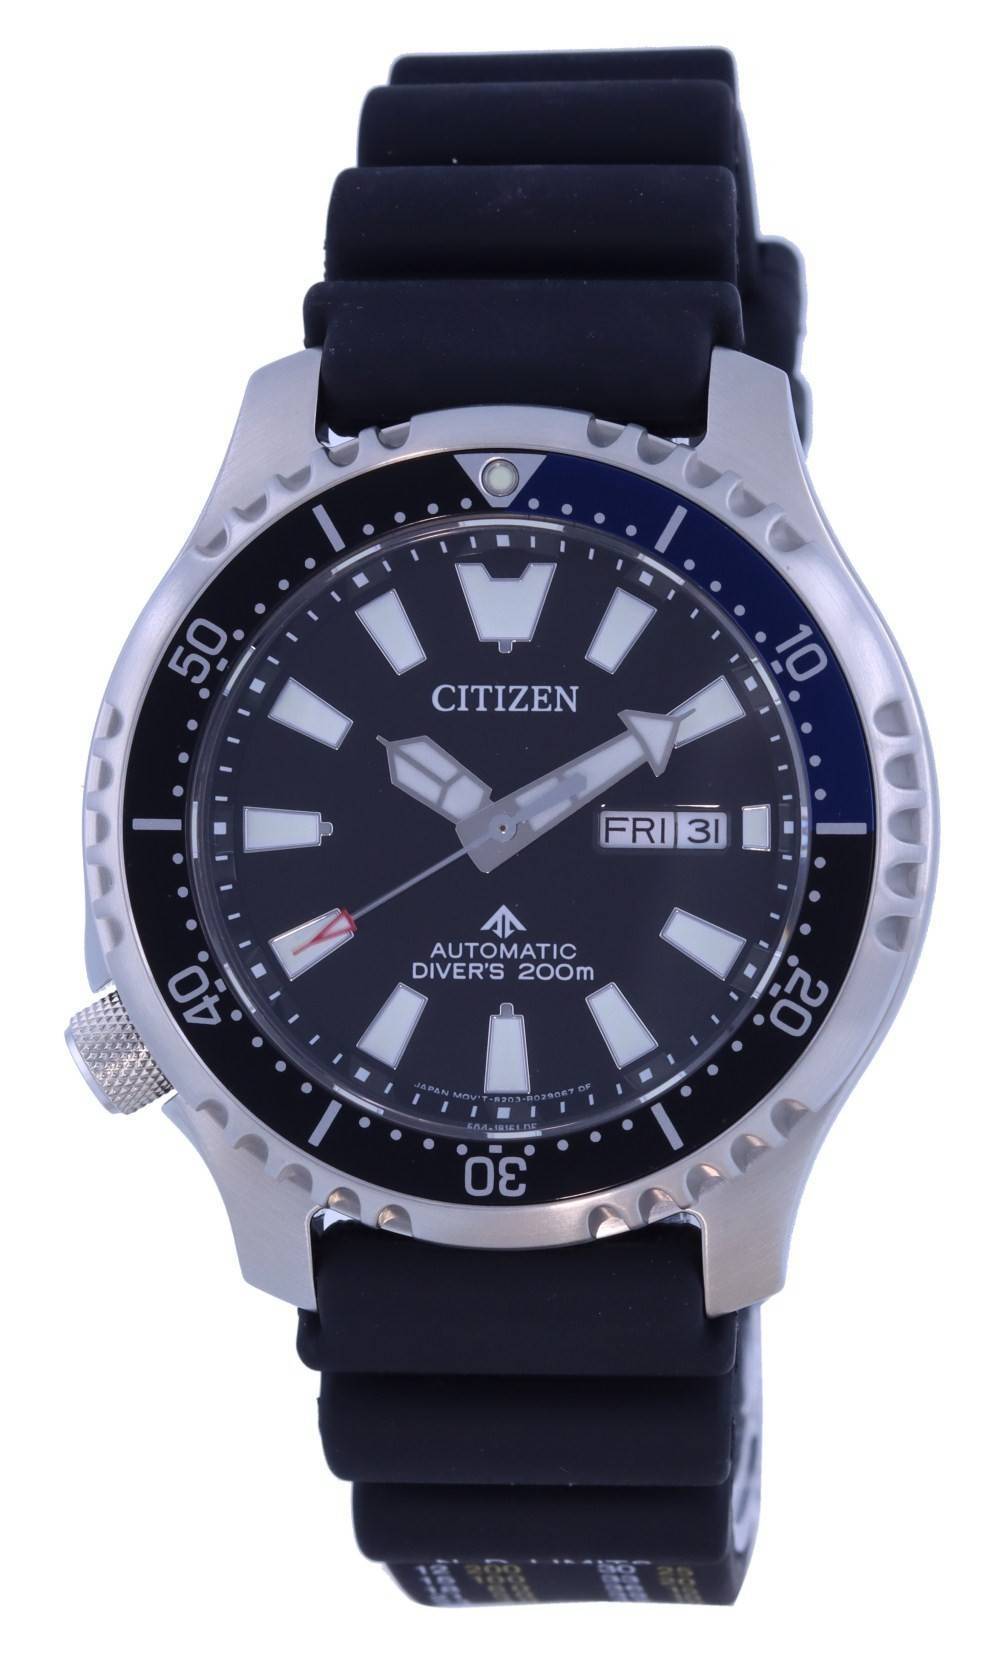 Đồng hồ nam Citizen Asia Fugu Promaster Limited Edition Automatic Diver's  NY0111-11E 200M vi